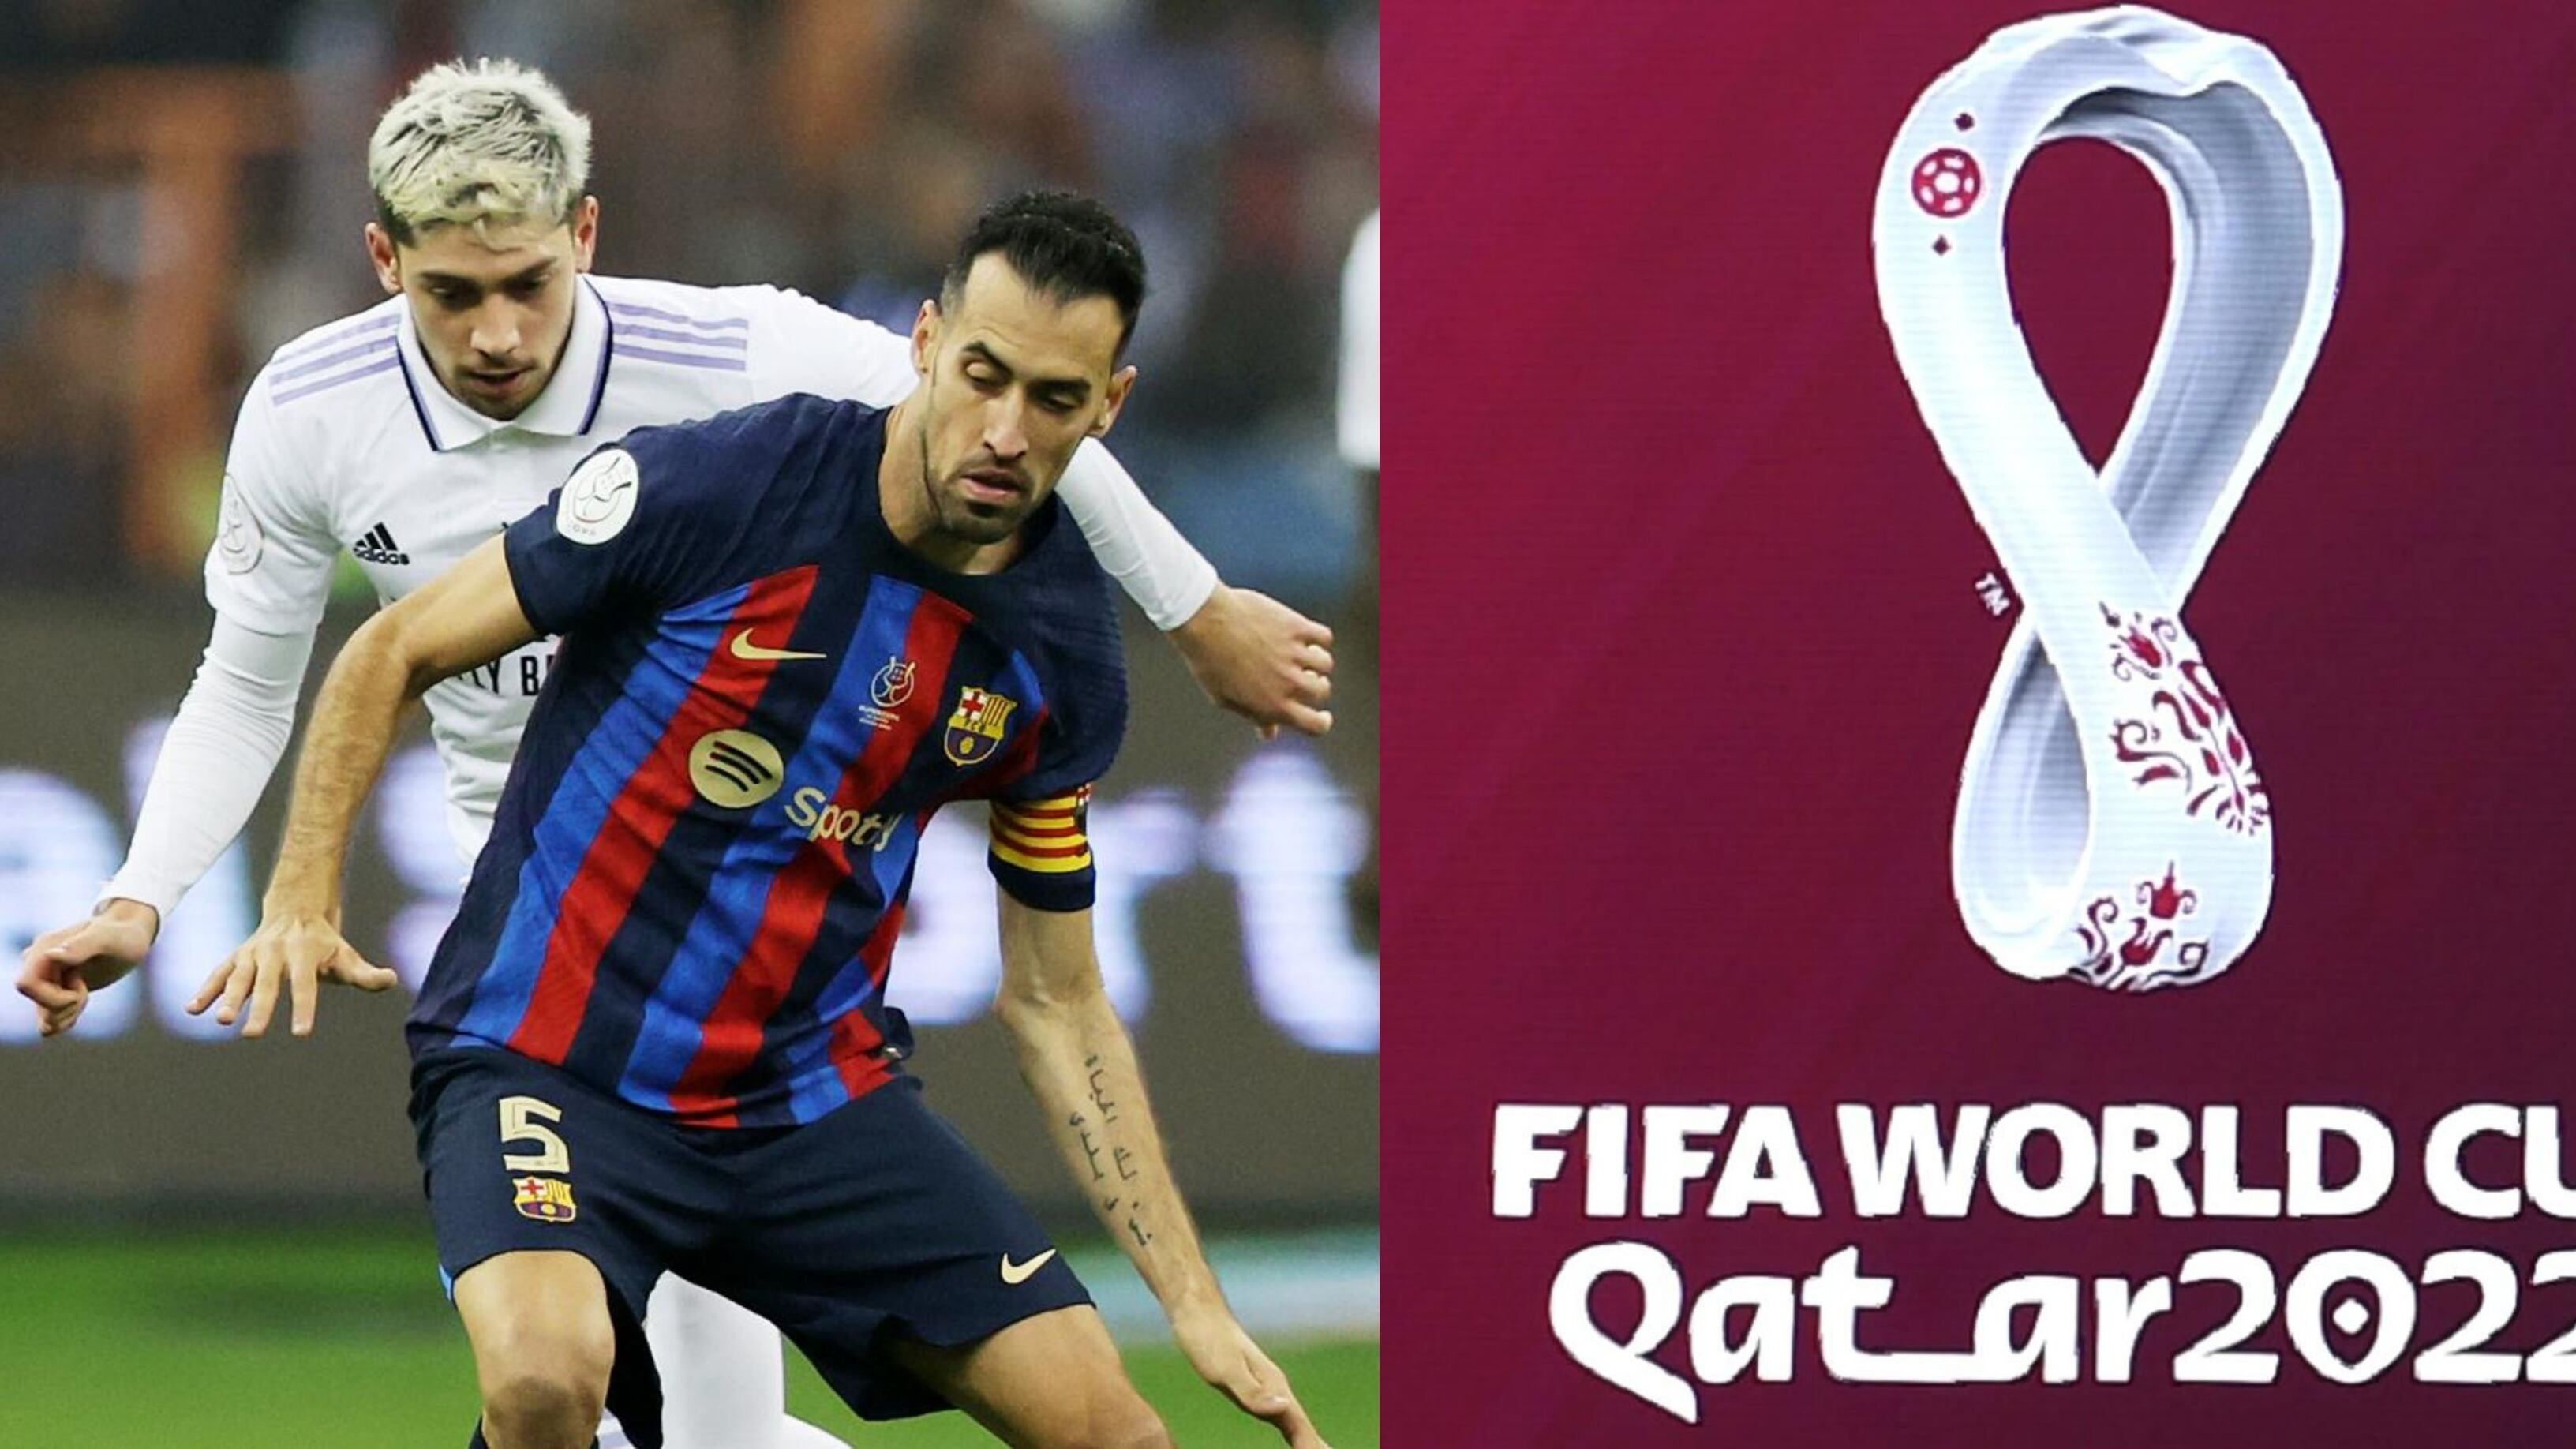 Sigue la incertidumbre, Busquets se demora y el Barcelona tiene a la sorpresa en Qatar